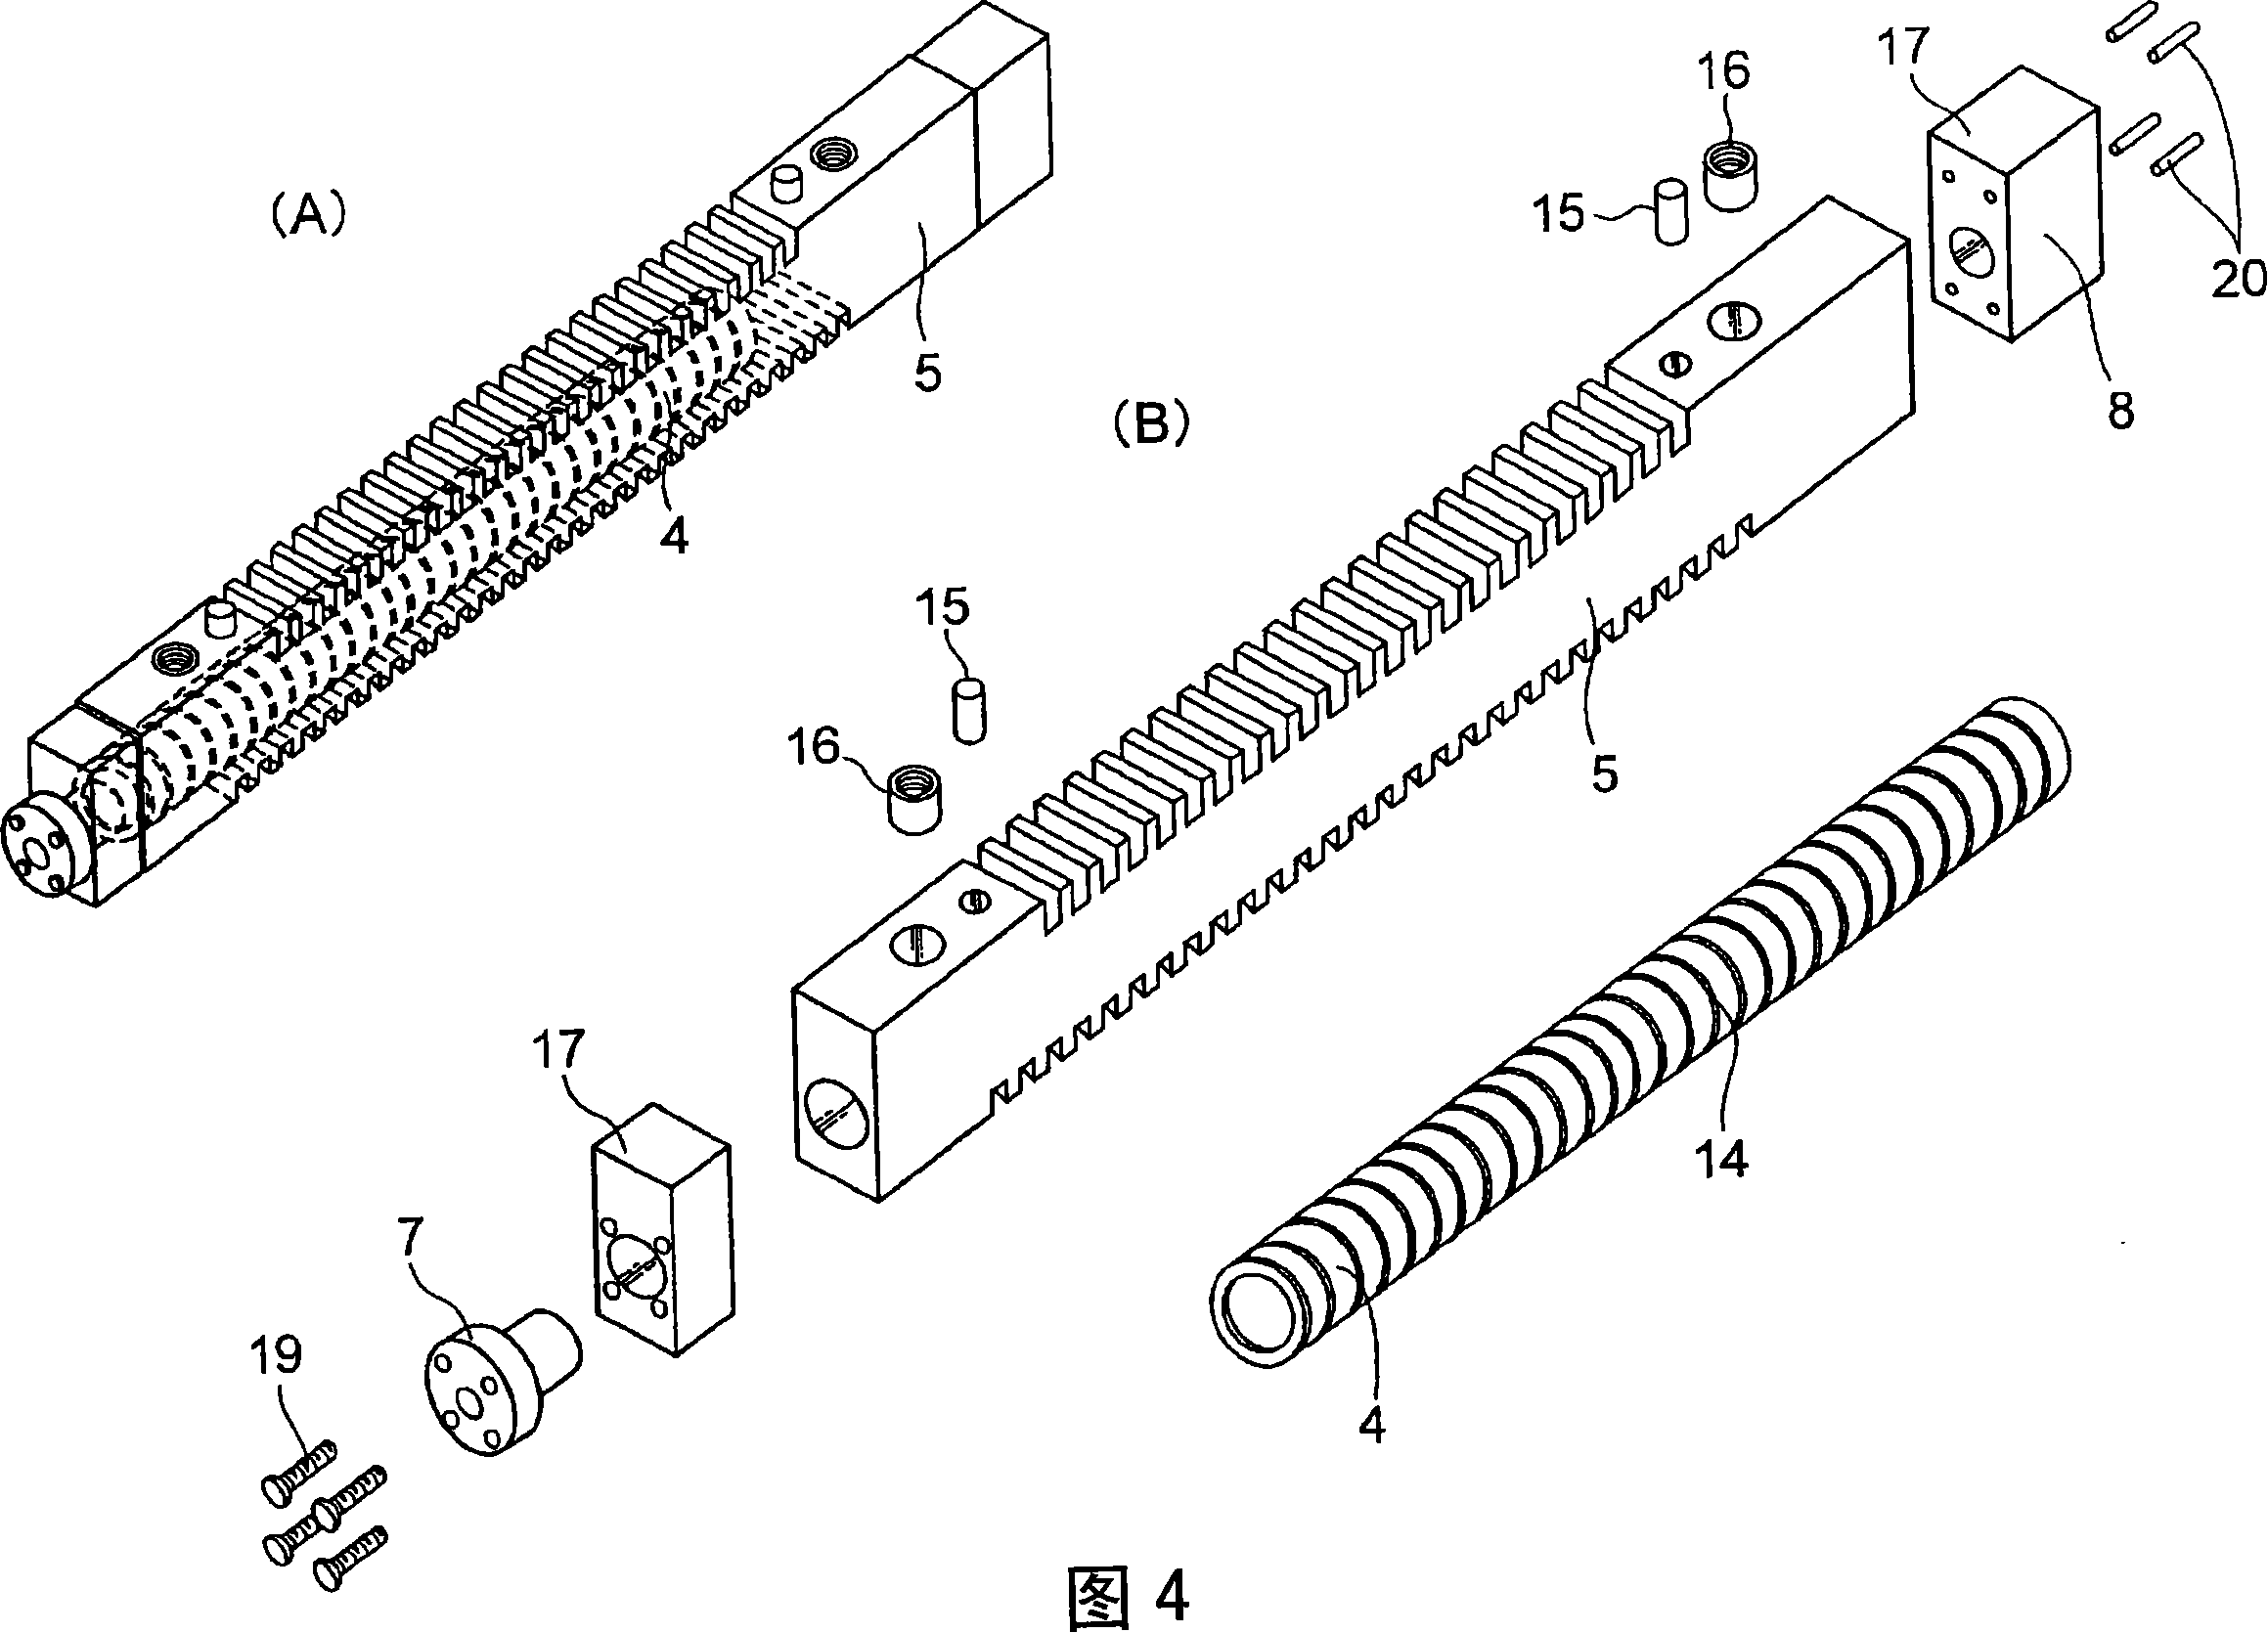 Linear motor